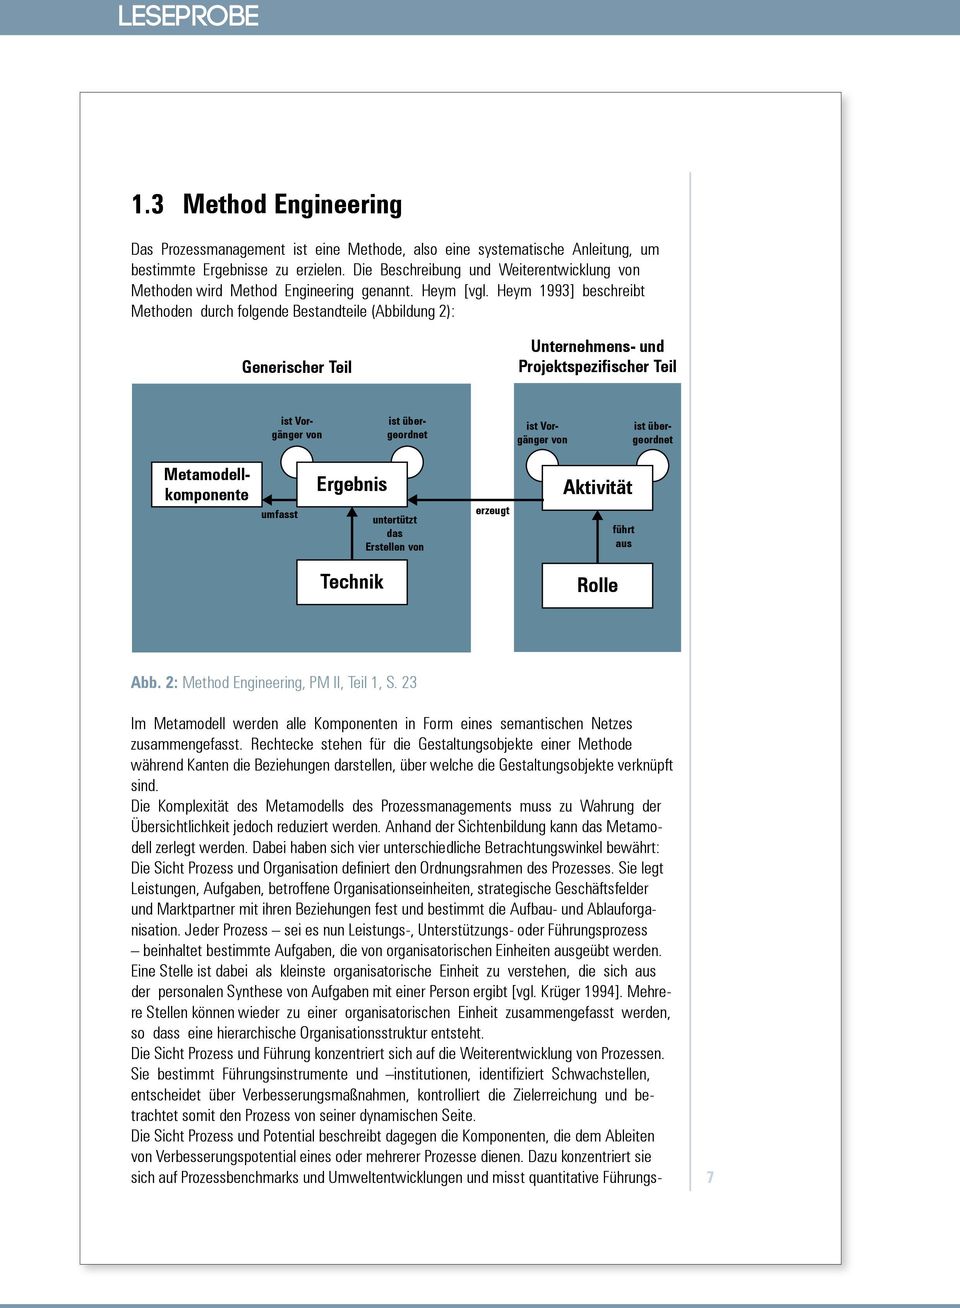 Heym 1993] beschreibt Methoden durch folgende Bestandteile (Abbildung 2): Generischer Teil Unternehmens- und Projektspezifischer Teil ist Vorgänger von ist übergeordnet ist Vorgänger von ist